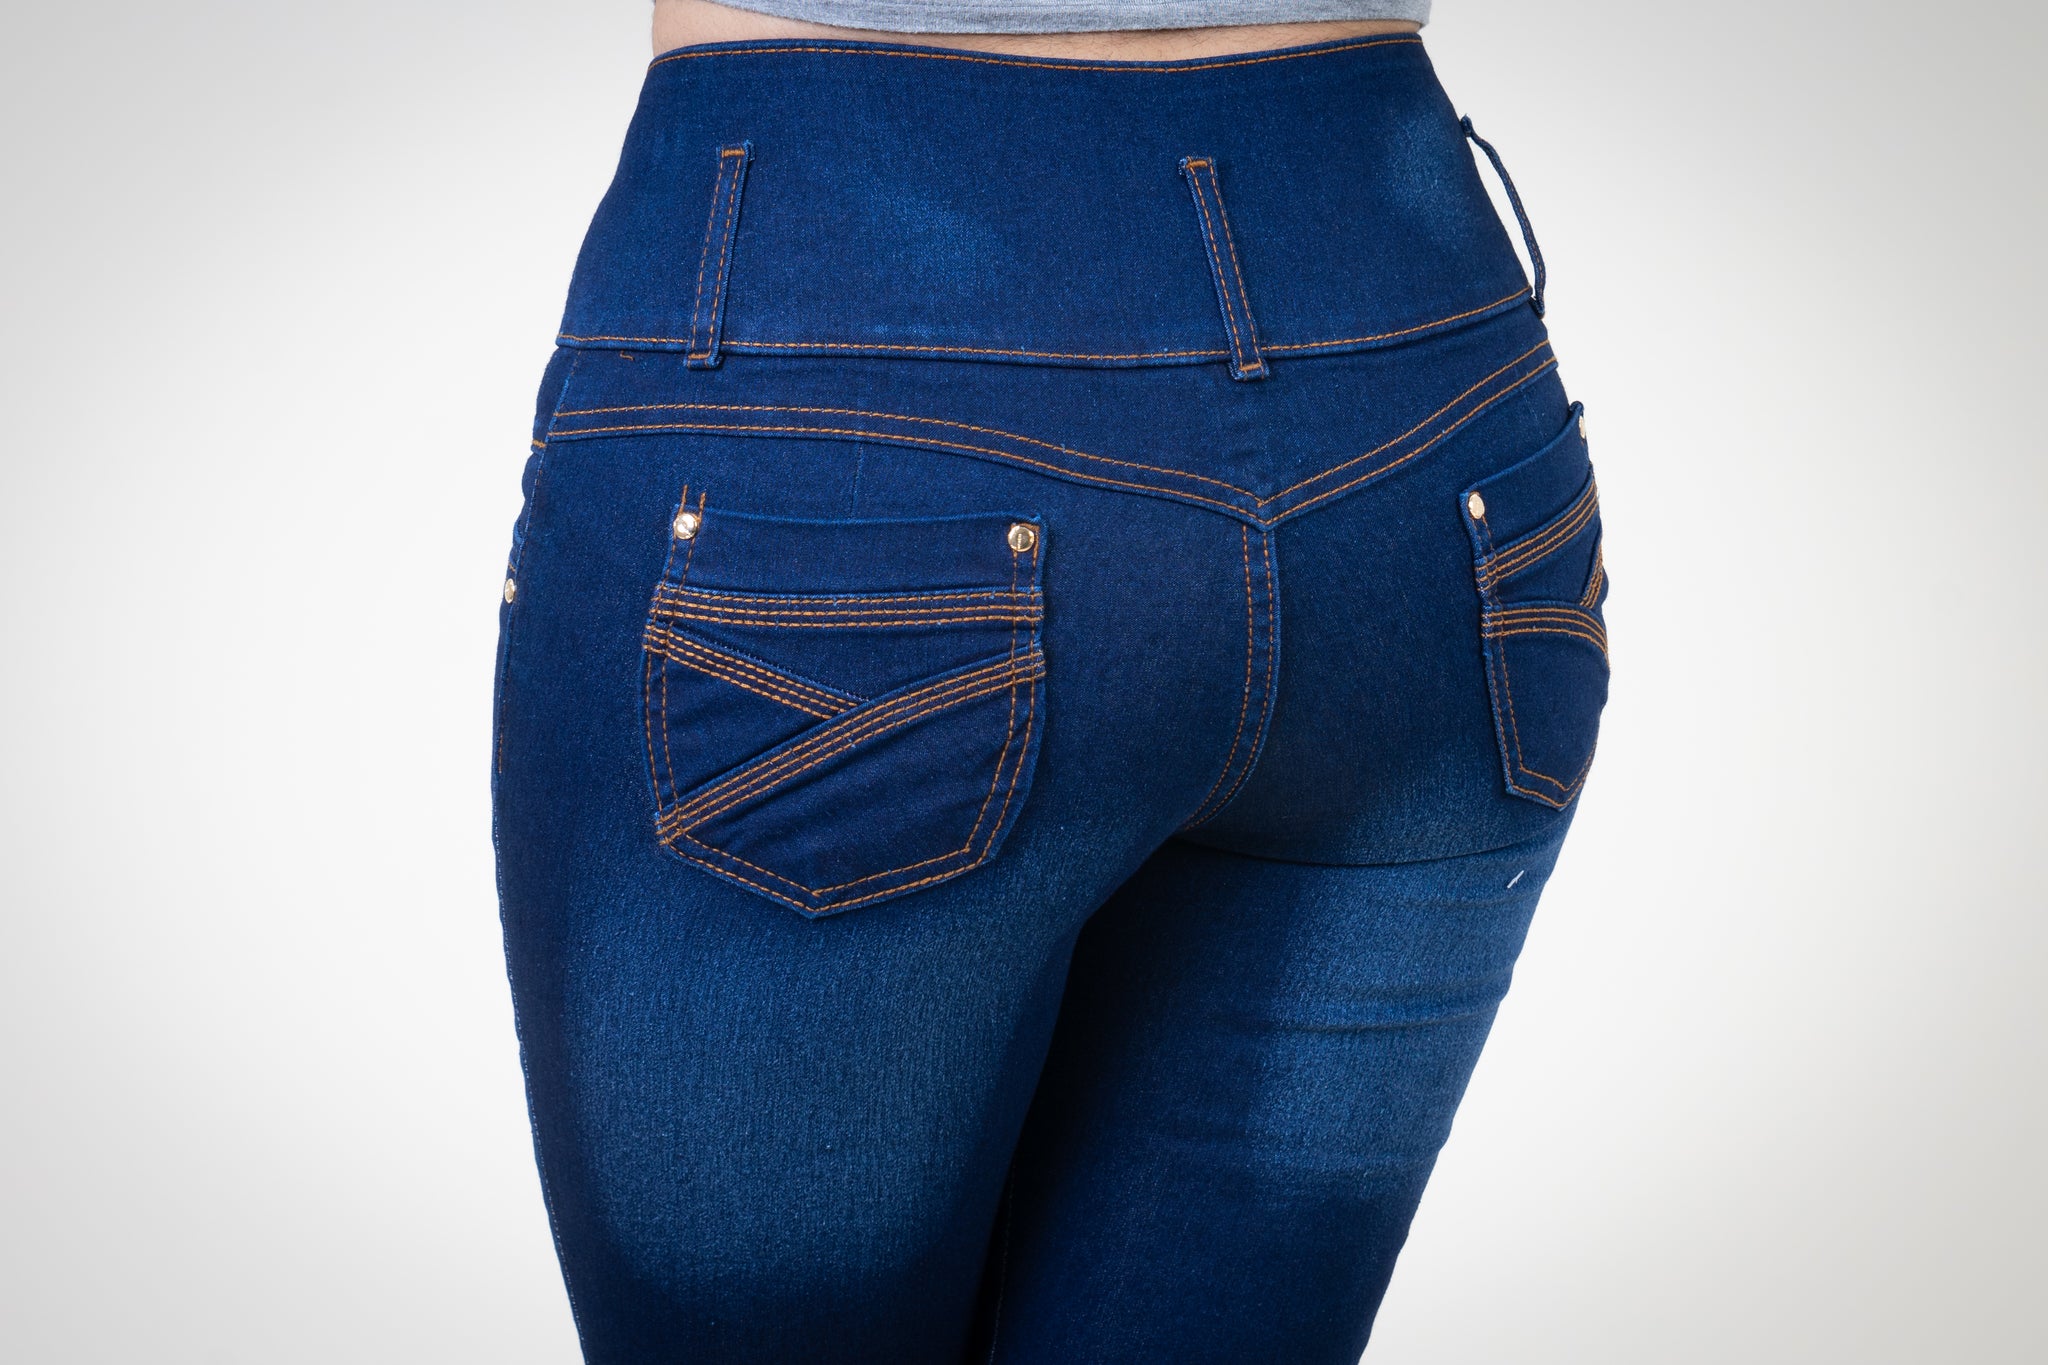 Pantalon Colombiano Azul Marino bolsa